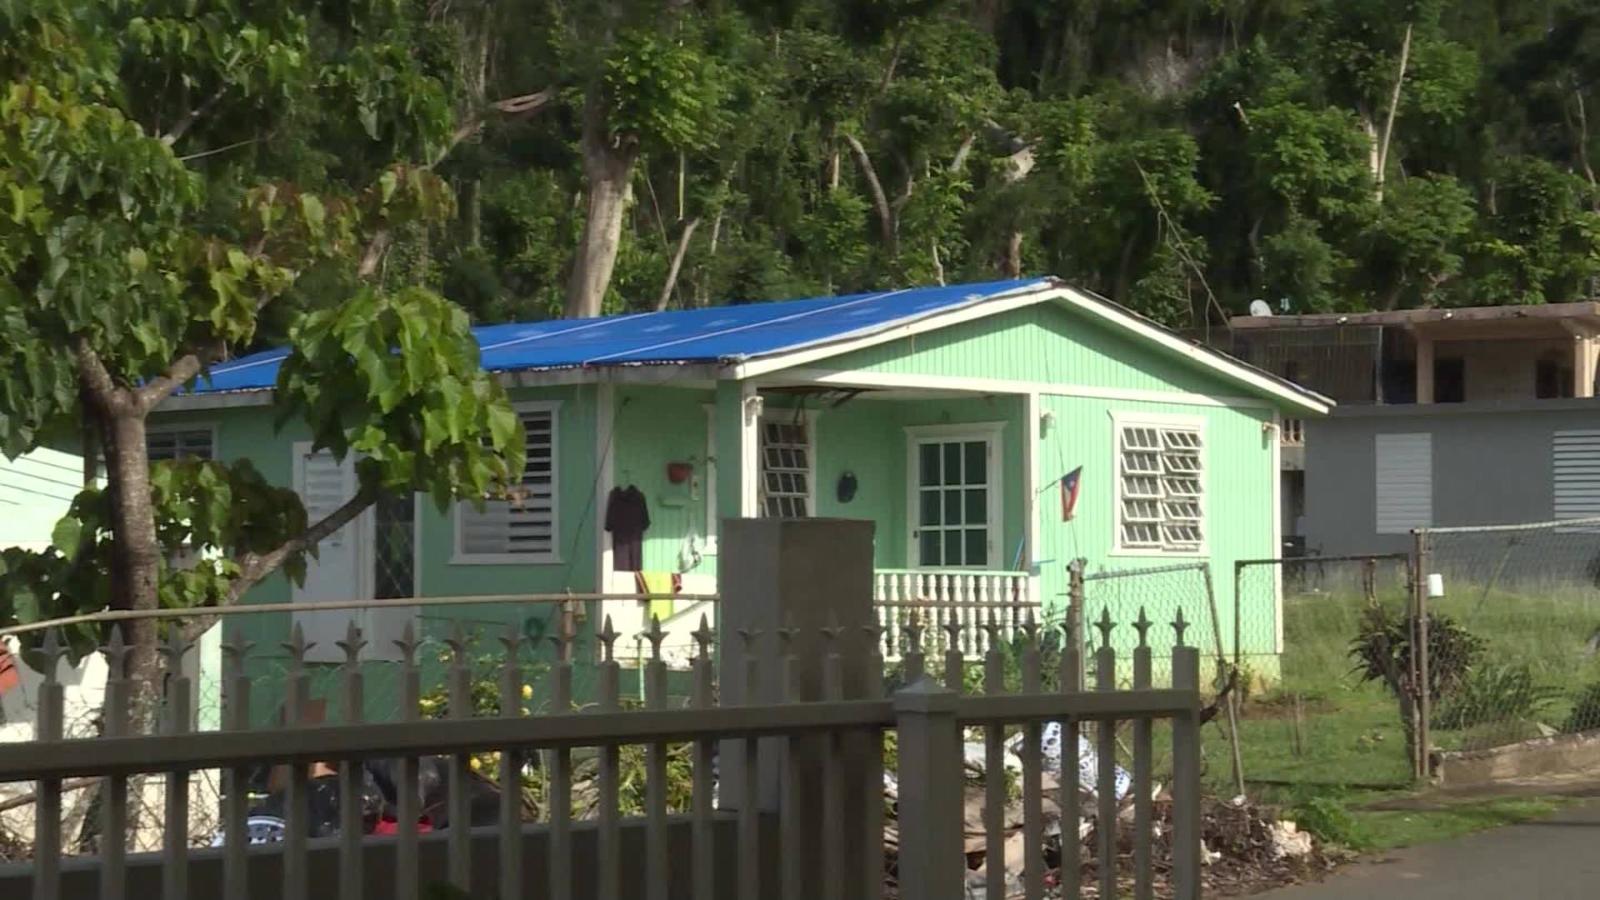 Techos azules' en Puerto Rico, ¿señal de esperanza? | Video | CNN